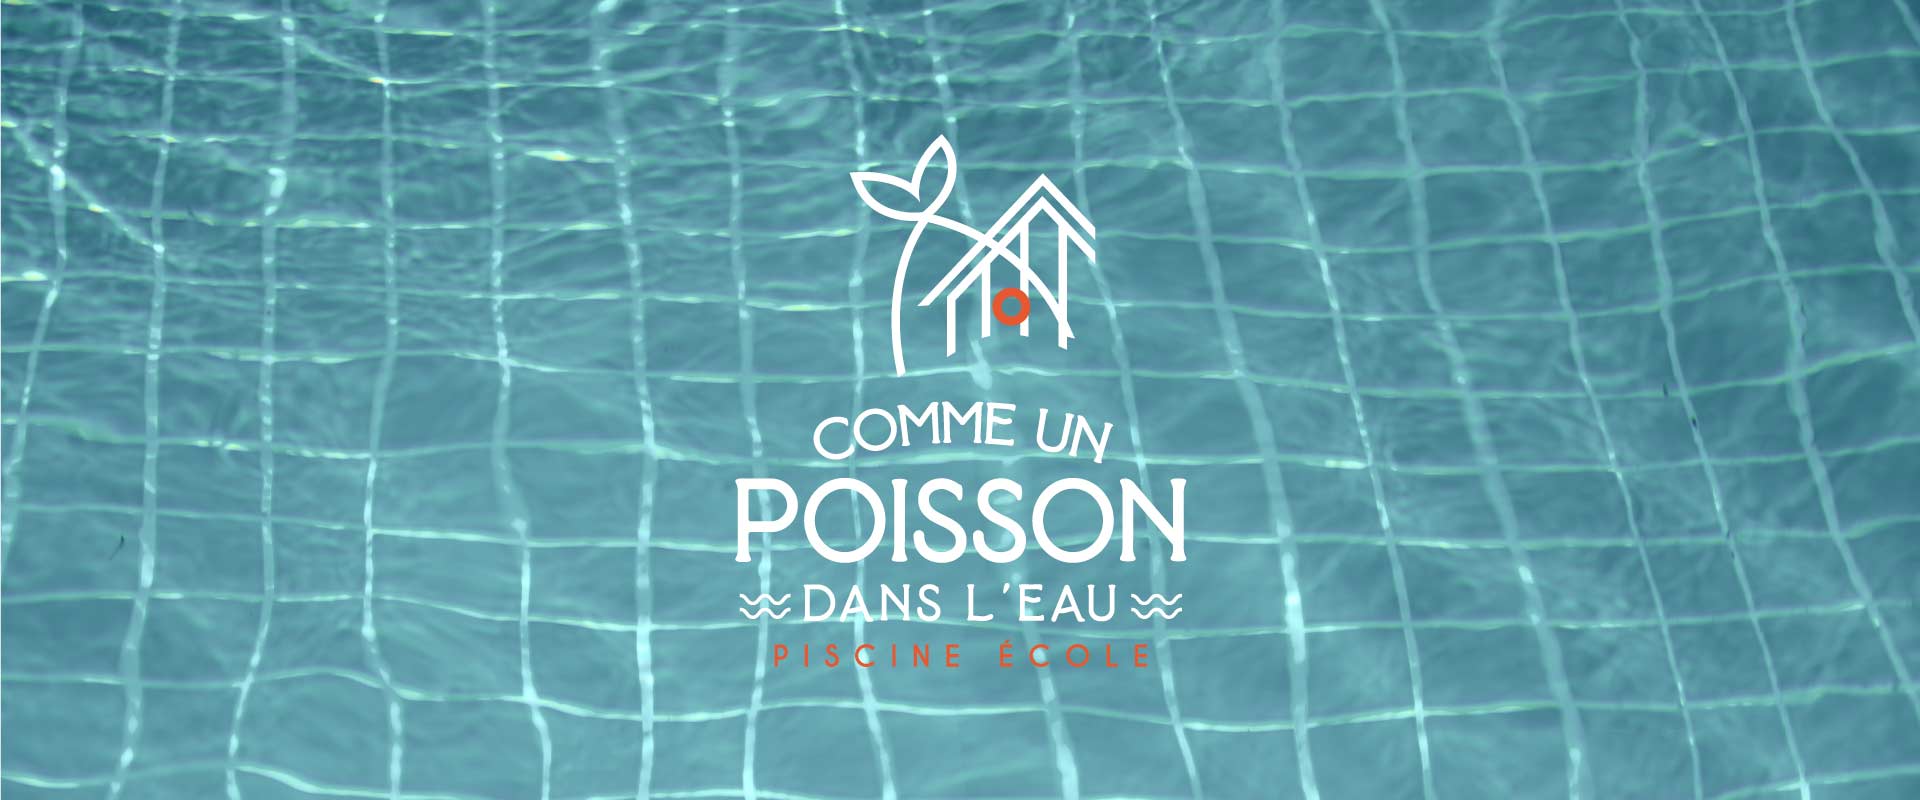 Agence de communication Graphiste Site internet Logo a Saint Gilles Croix de VIe en Vendee Comme un poisson dans leau piscine a saint gilles